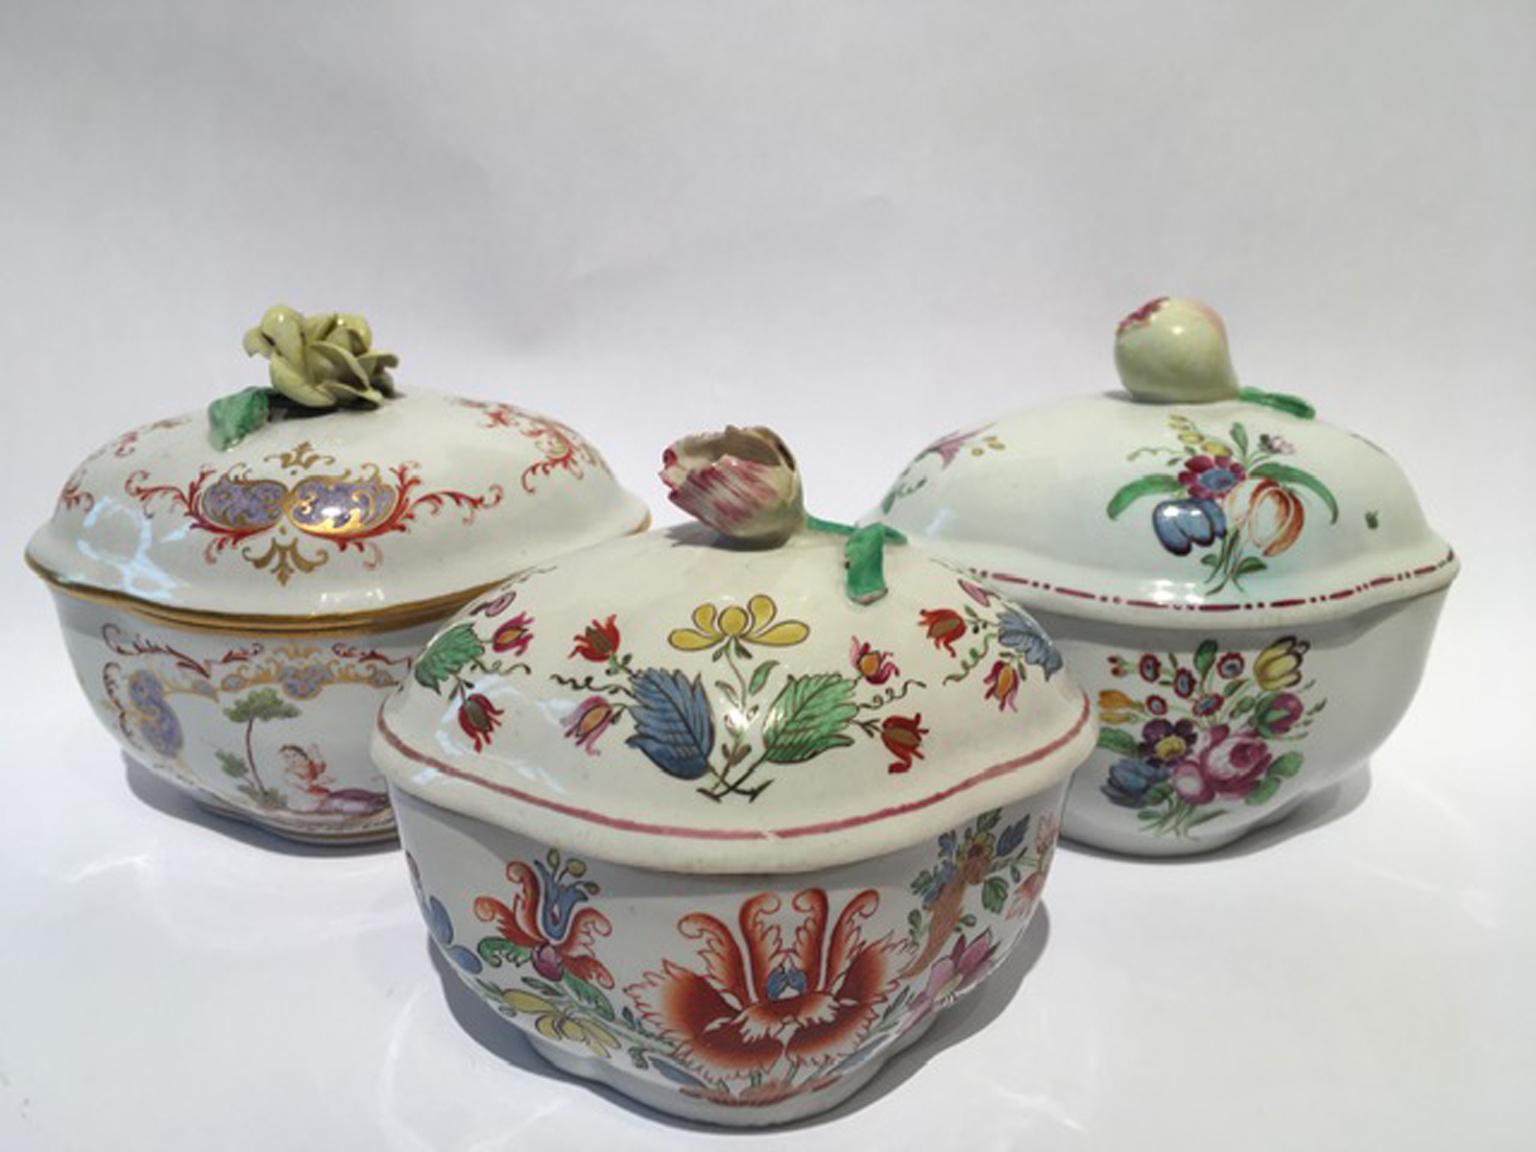 Diese Zuckerdosen sind eine kleine Sammlung interessanter italienischer Porzellanstücke, die aus der historischen Fabrik von Richard Ginori in Doccia, Italien, stammen.
Eine von ihnen hat das Tulpendekor, eines der begehrtesten, die anderen